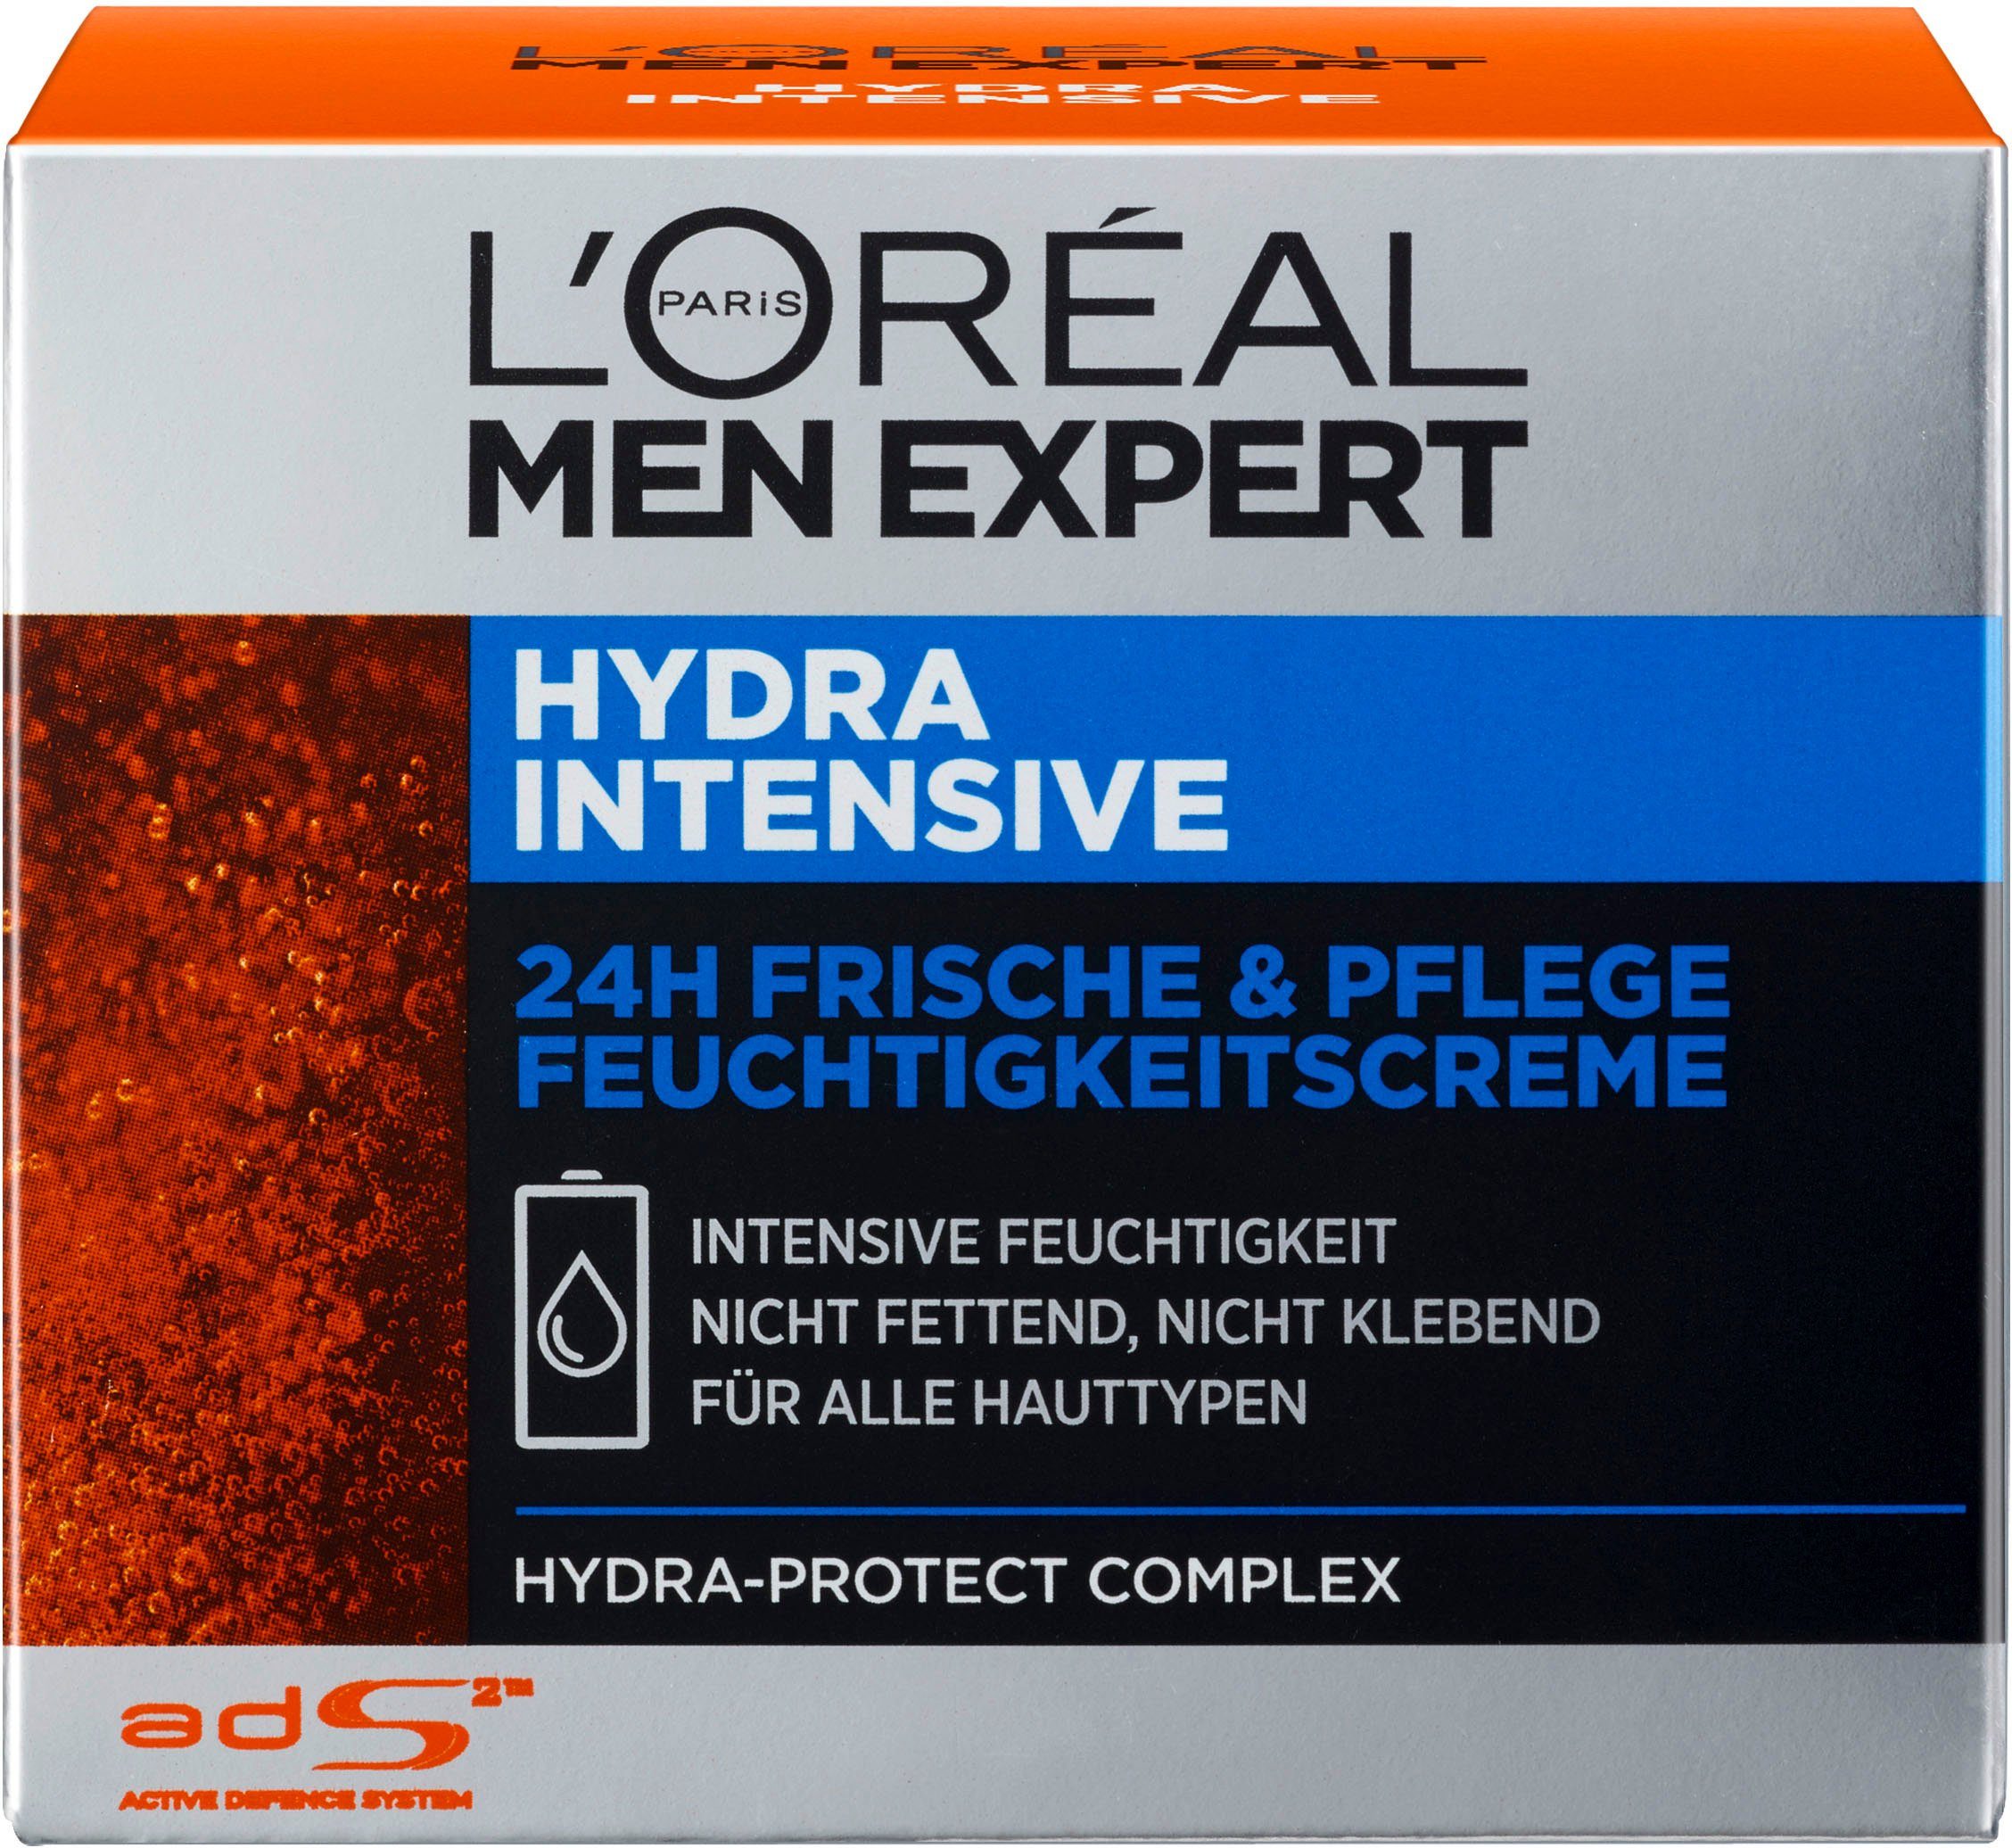 sensible Männerhaut; ohne schnell, zieht fetten Feuchtigkeitscreme Hydra Intensive, ein MEN PARIS EXPERT für L'ORÉAL